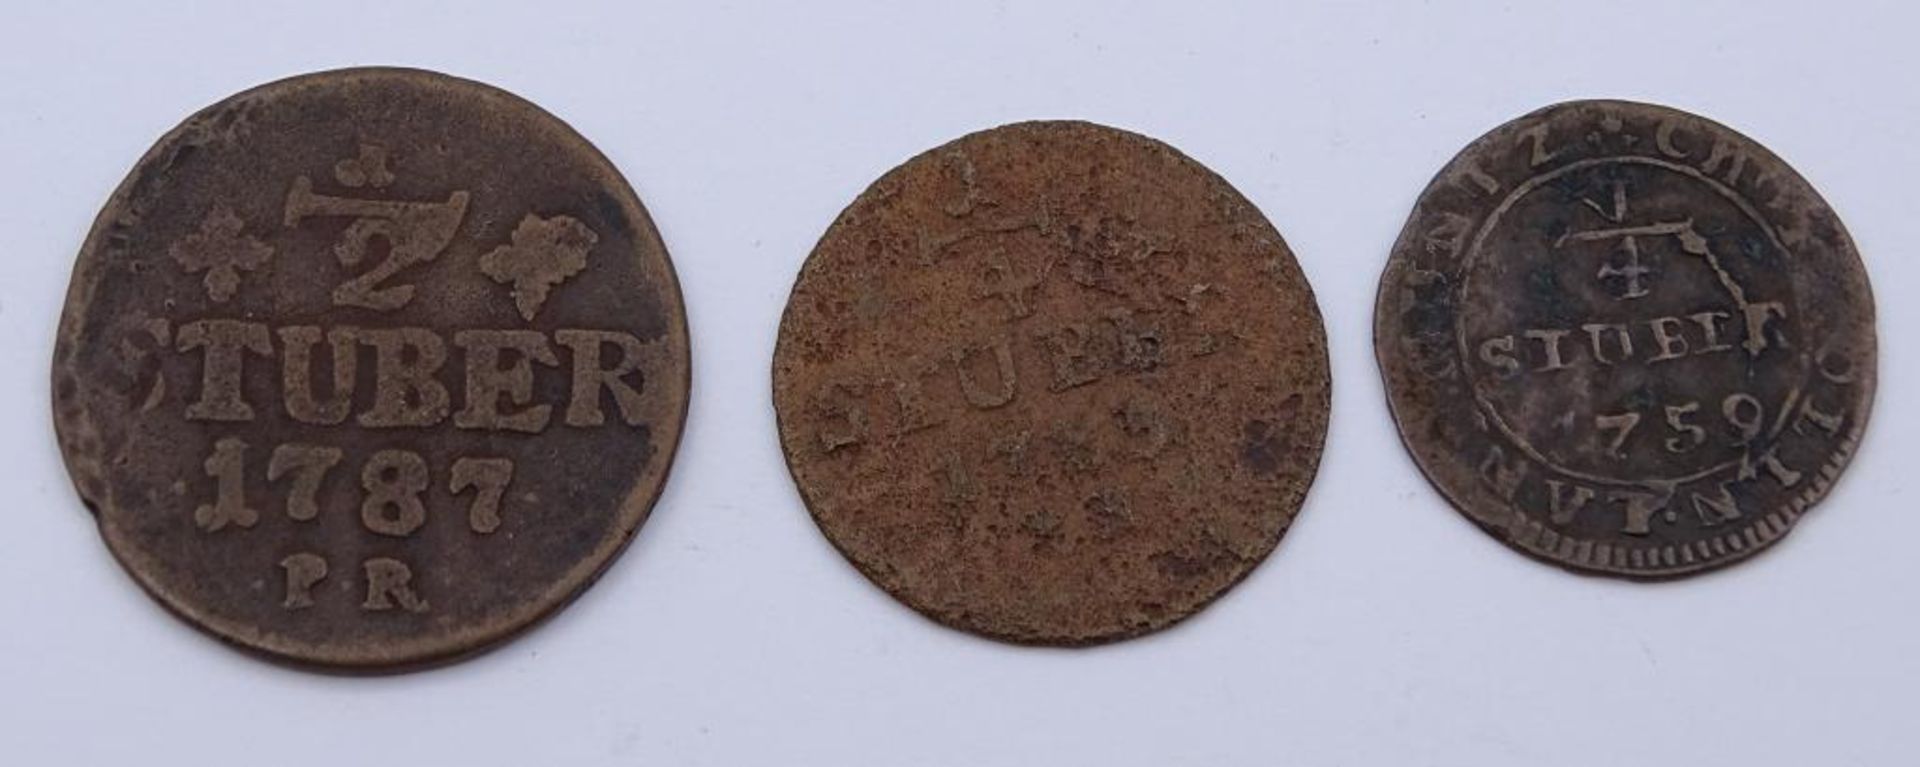 Drei Stuber Münzen- 1787,1759,178- - -22.61 % buyer's premium on the hammer priceVAT margin